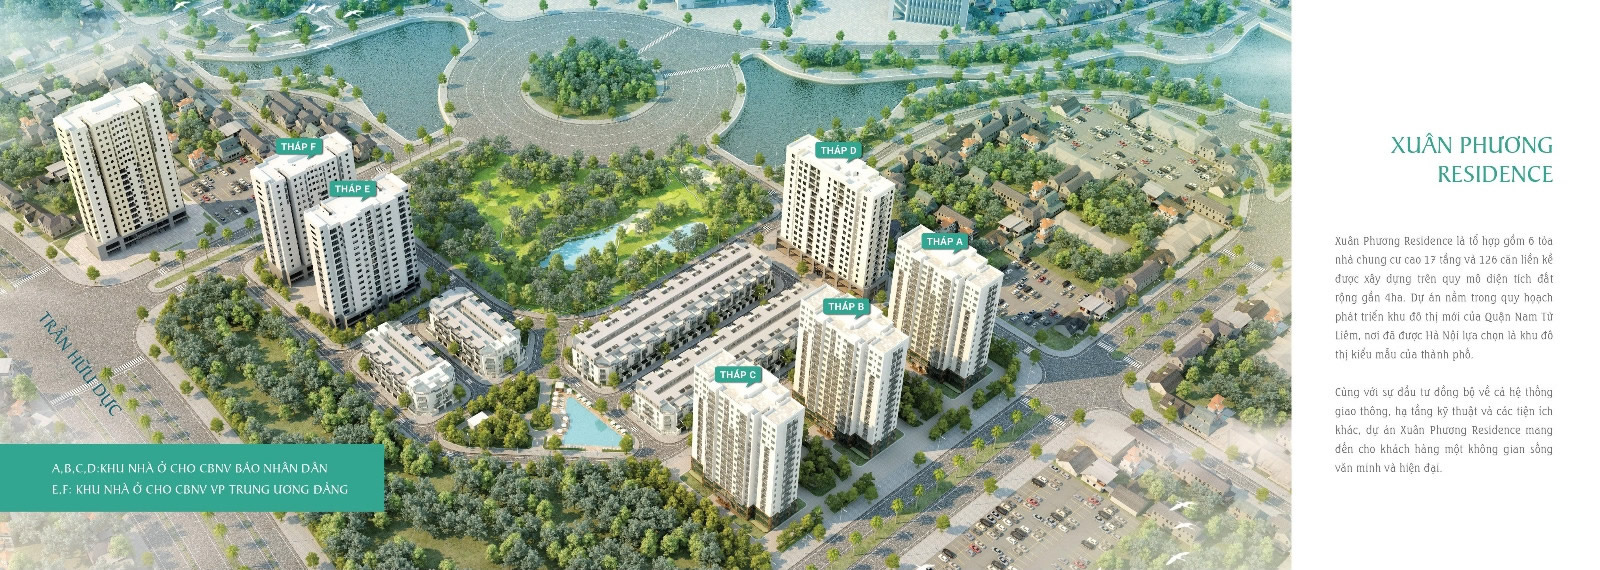  Phối cảnh dự án Chung cư Xuân Phương Residence